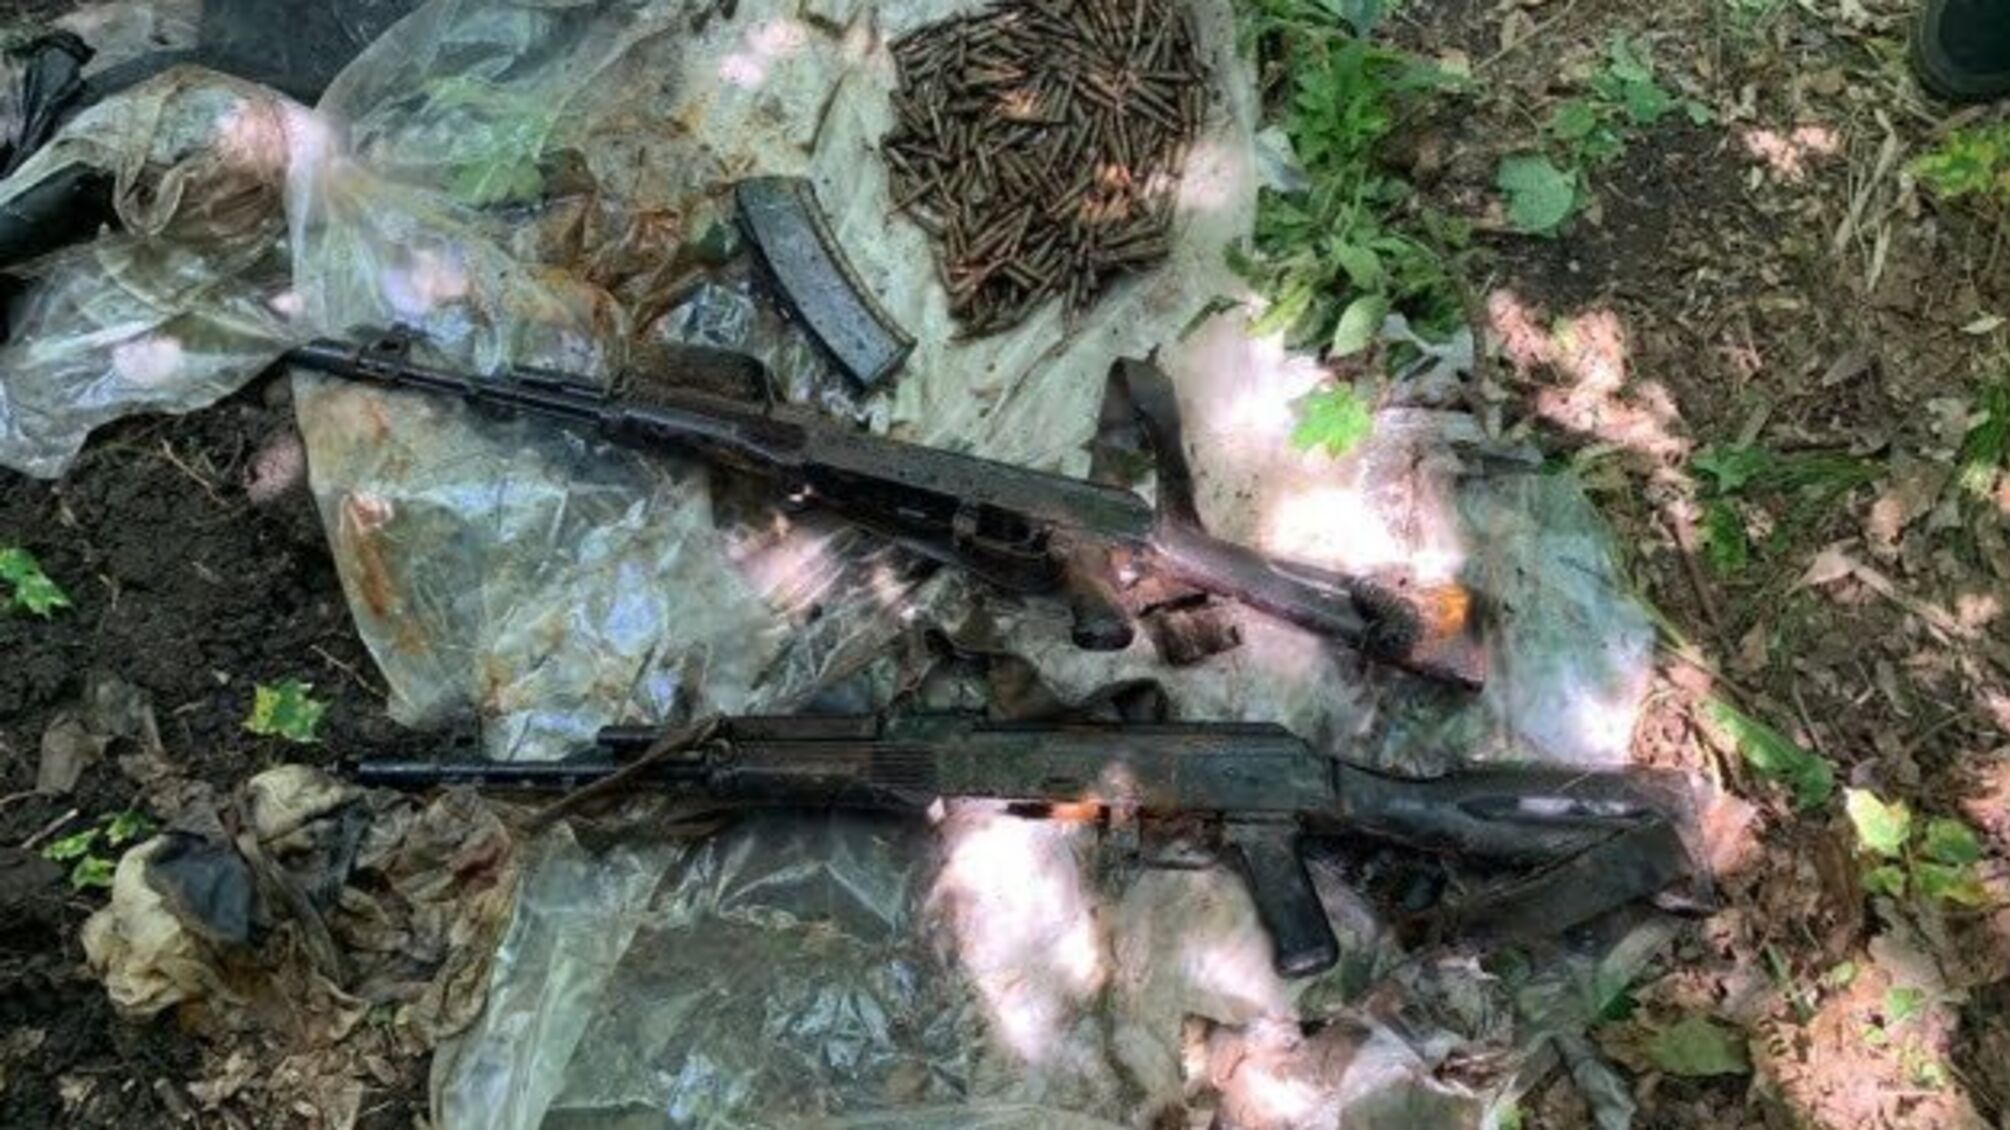 На Луганщині СБУ викрила схрон бойовика, причетного до підриву мосту